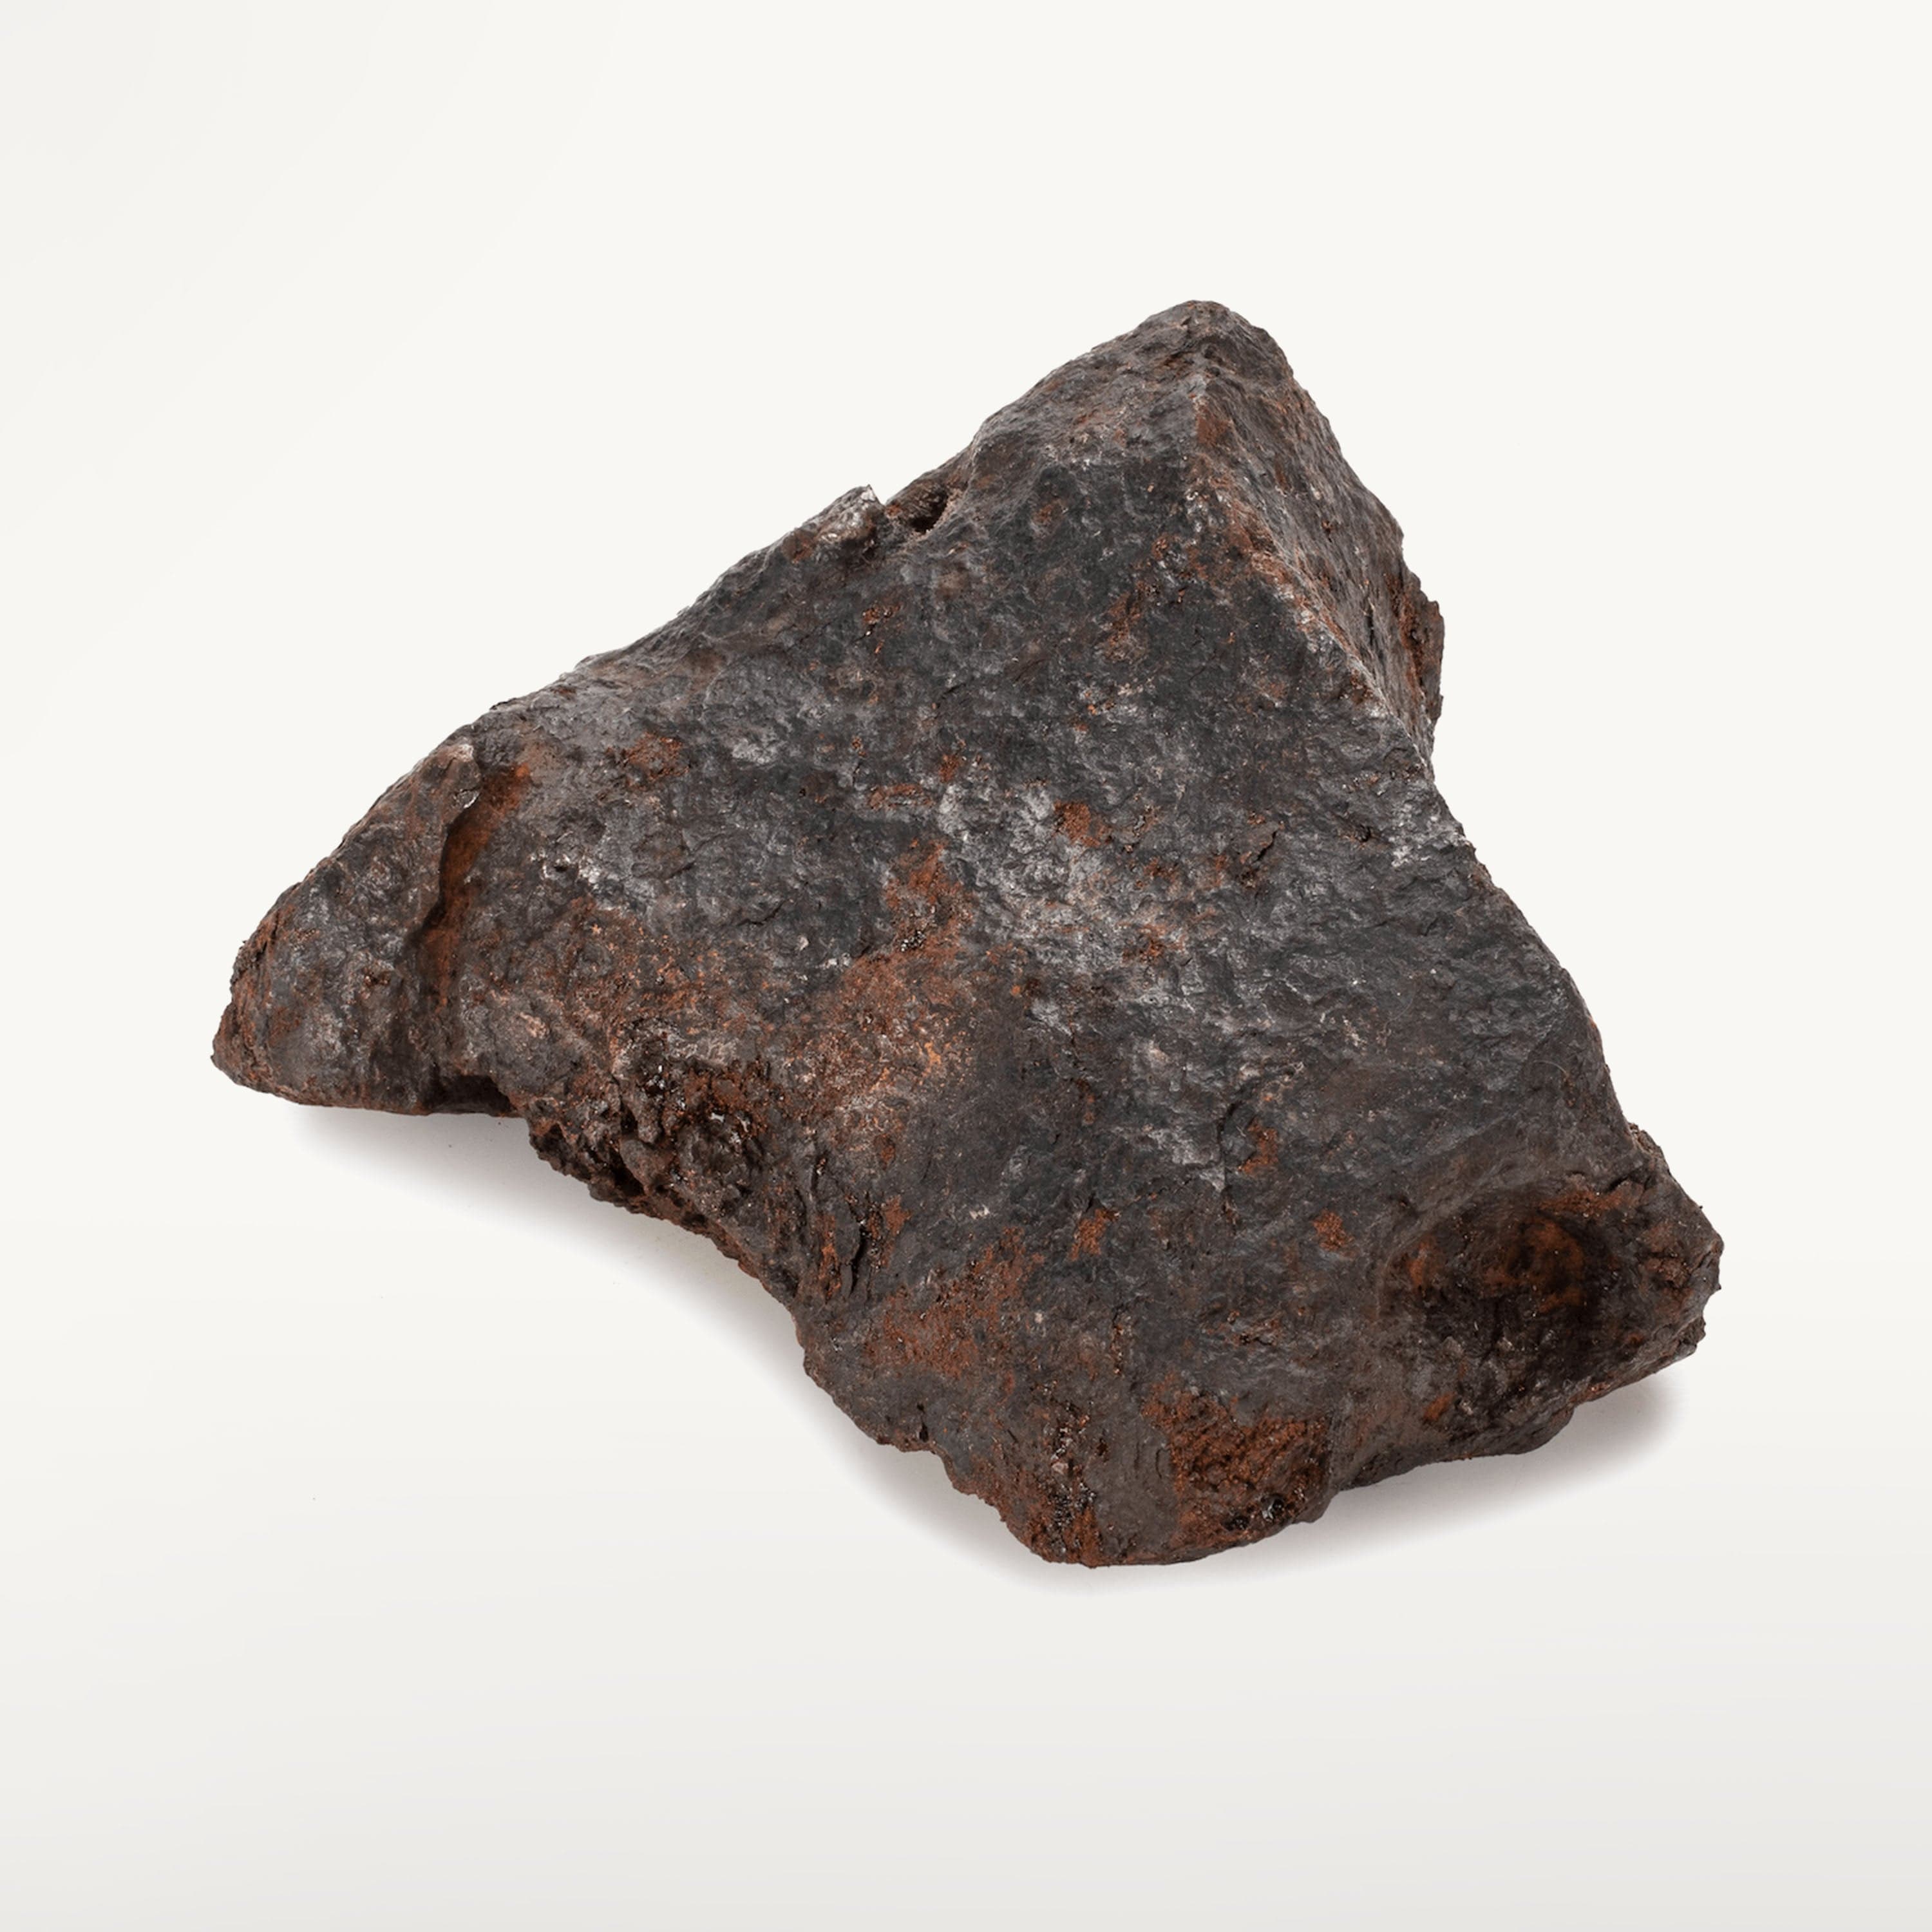 KALIFANO | Natural Campo Del Cielo Iron Meteorite for Sale - 2.2 kilos